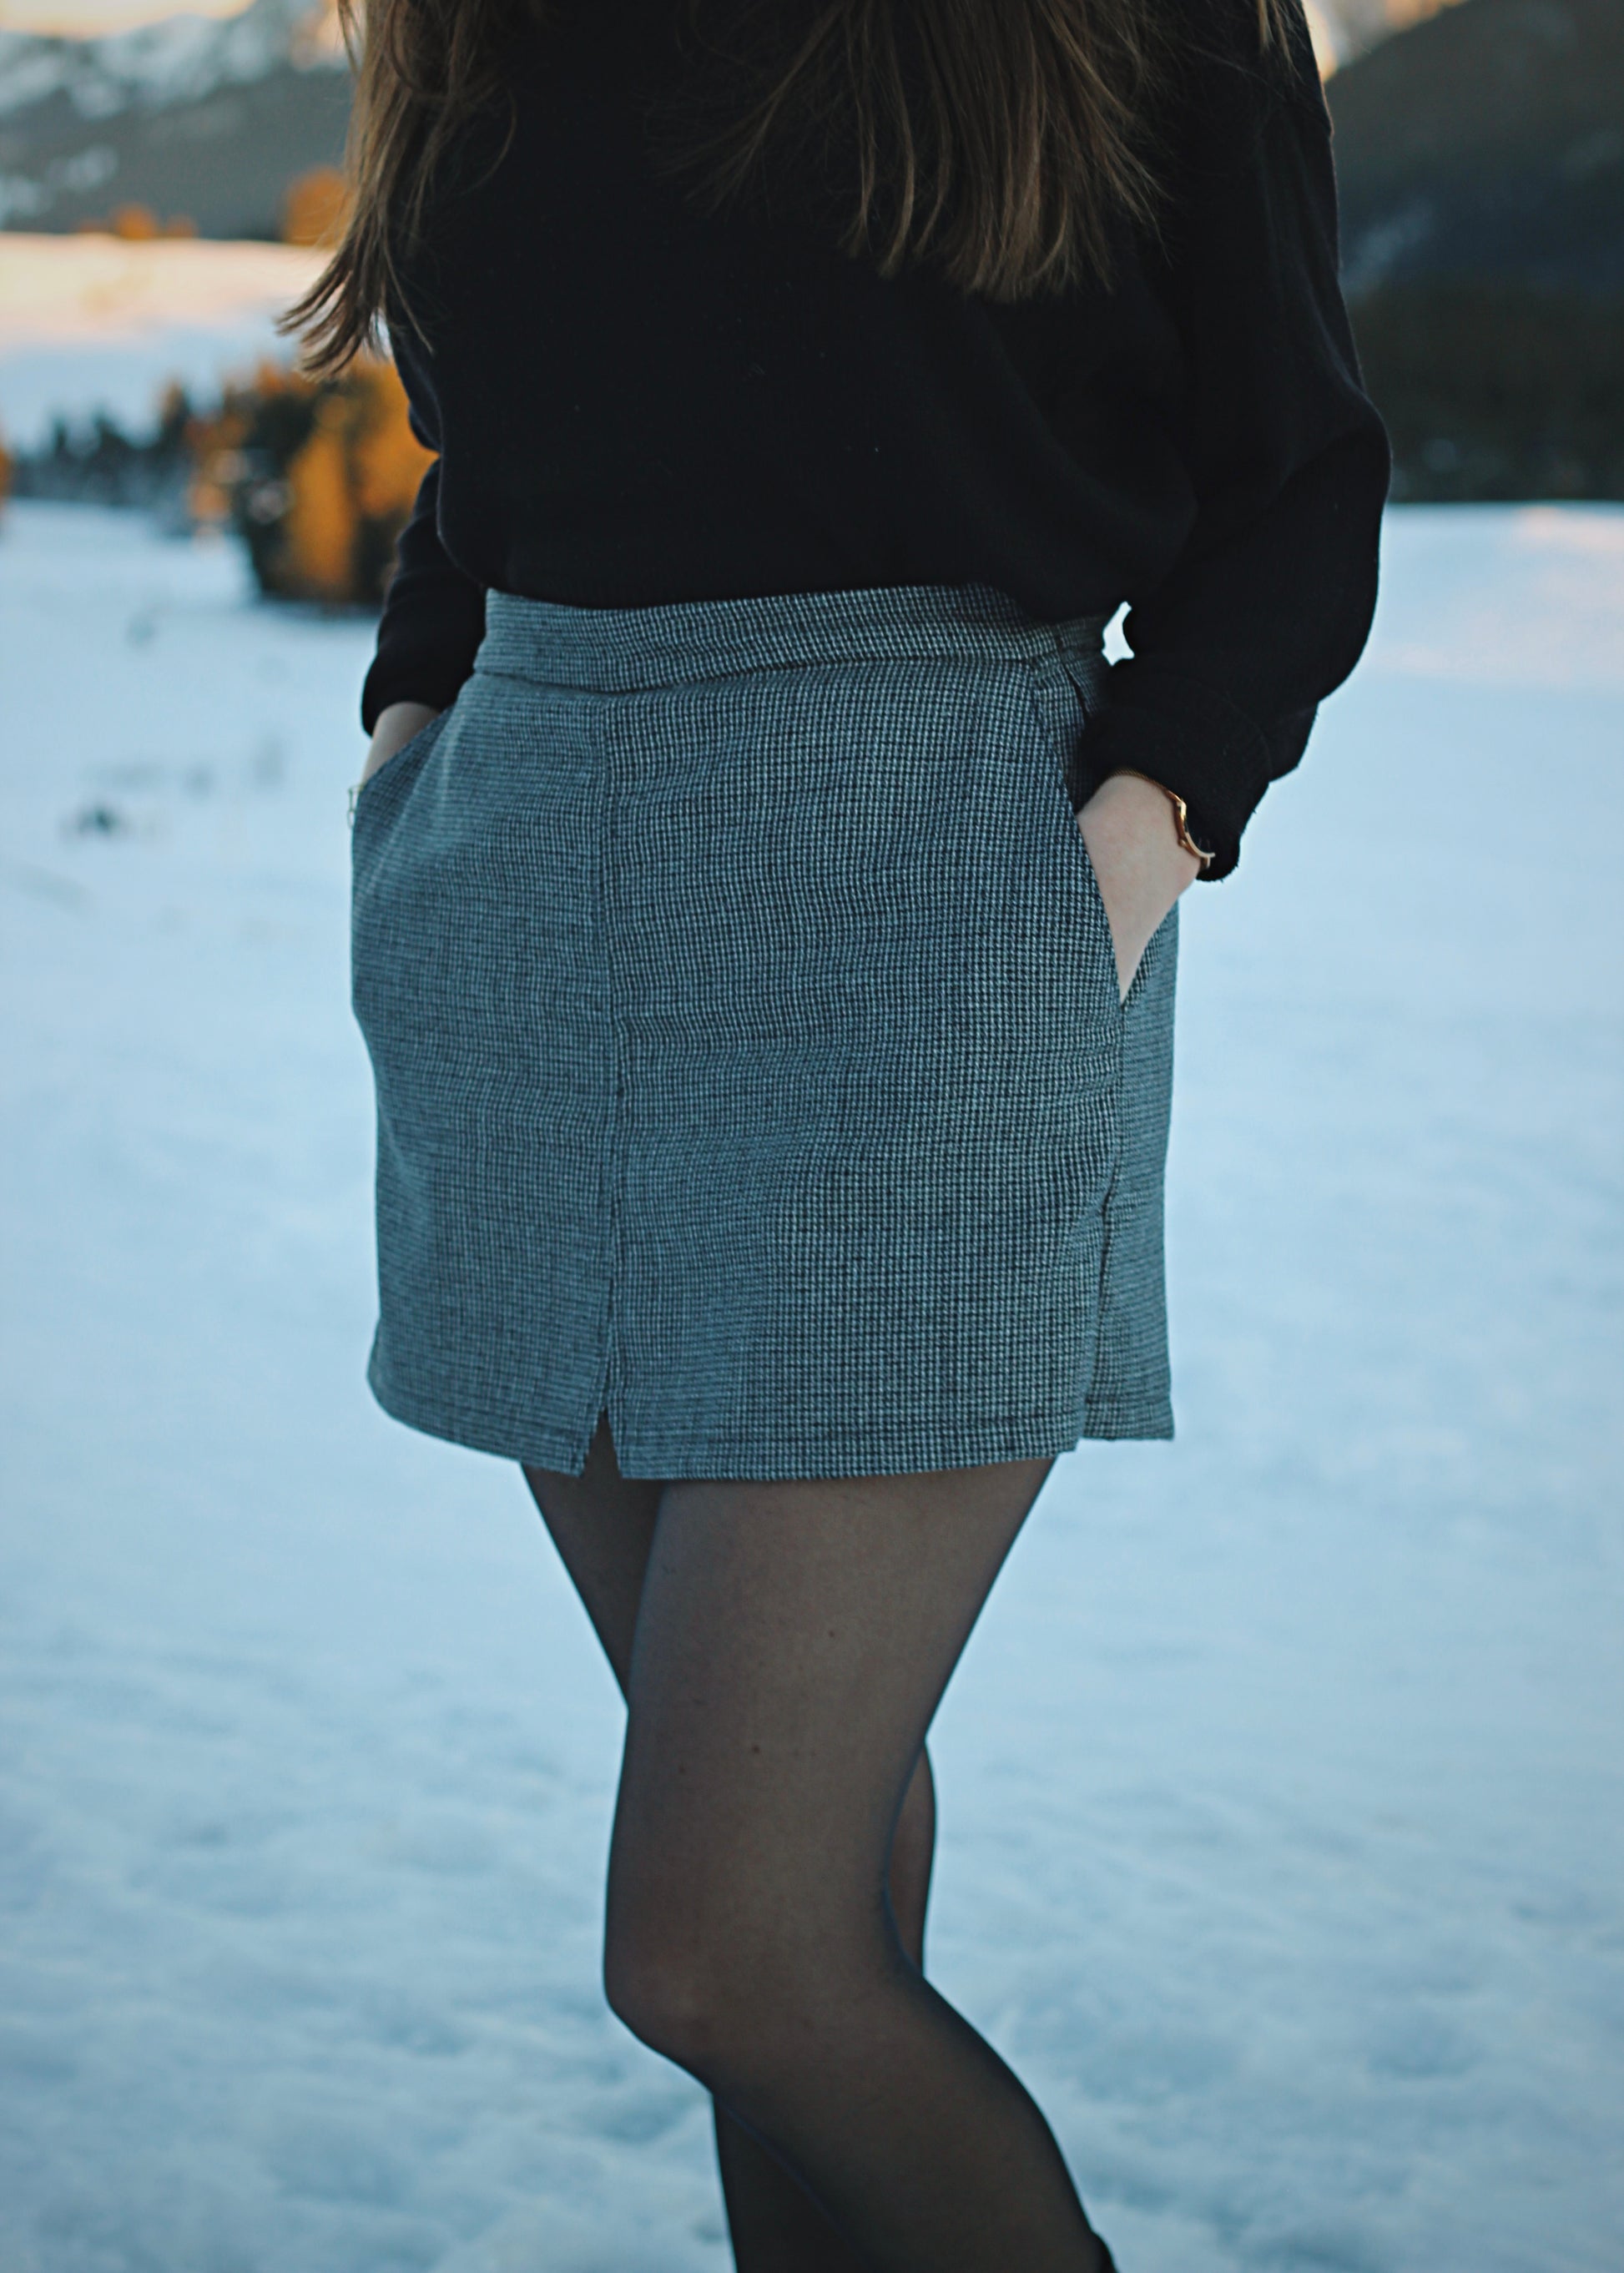 Jupe-short dans la neige, ambiance hivernale au soleil couchant, zoom sur la jupe de 3/4 devant.